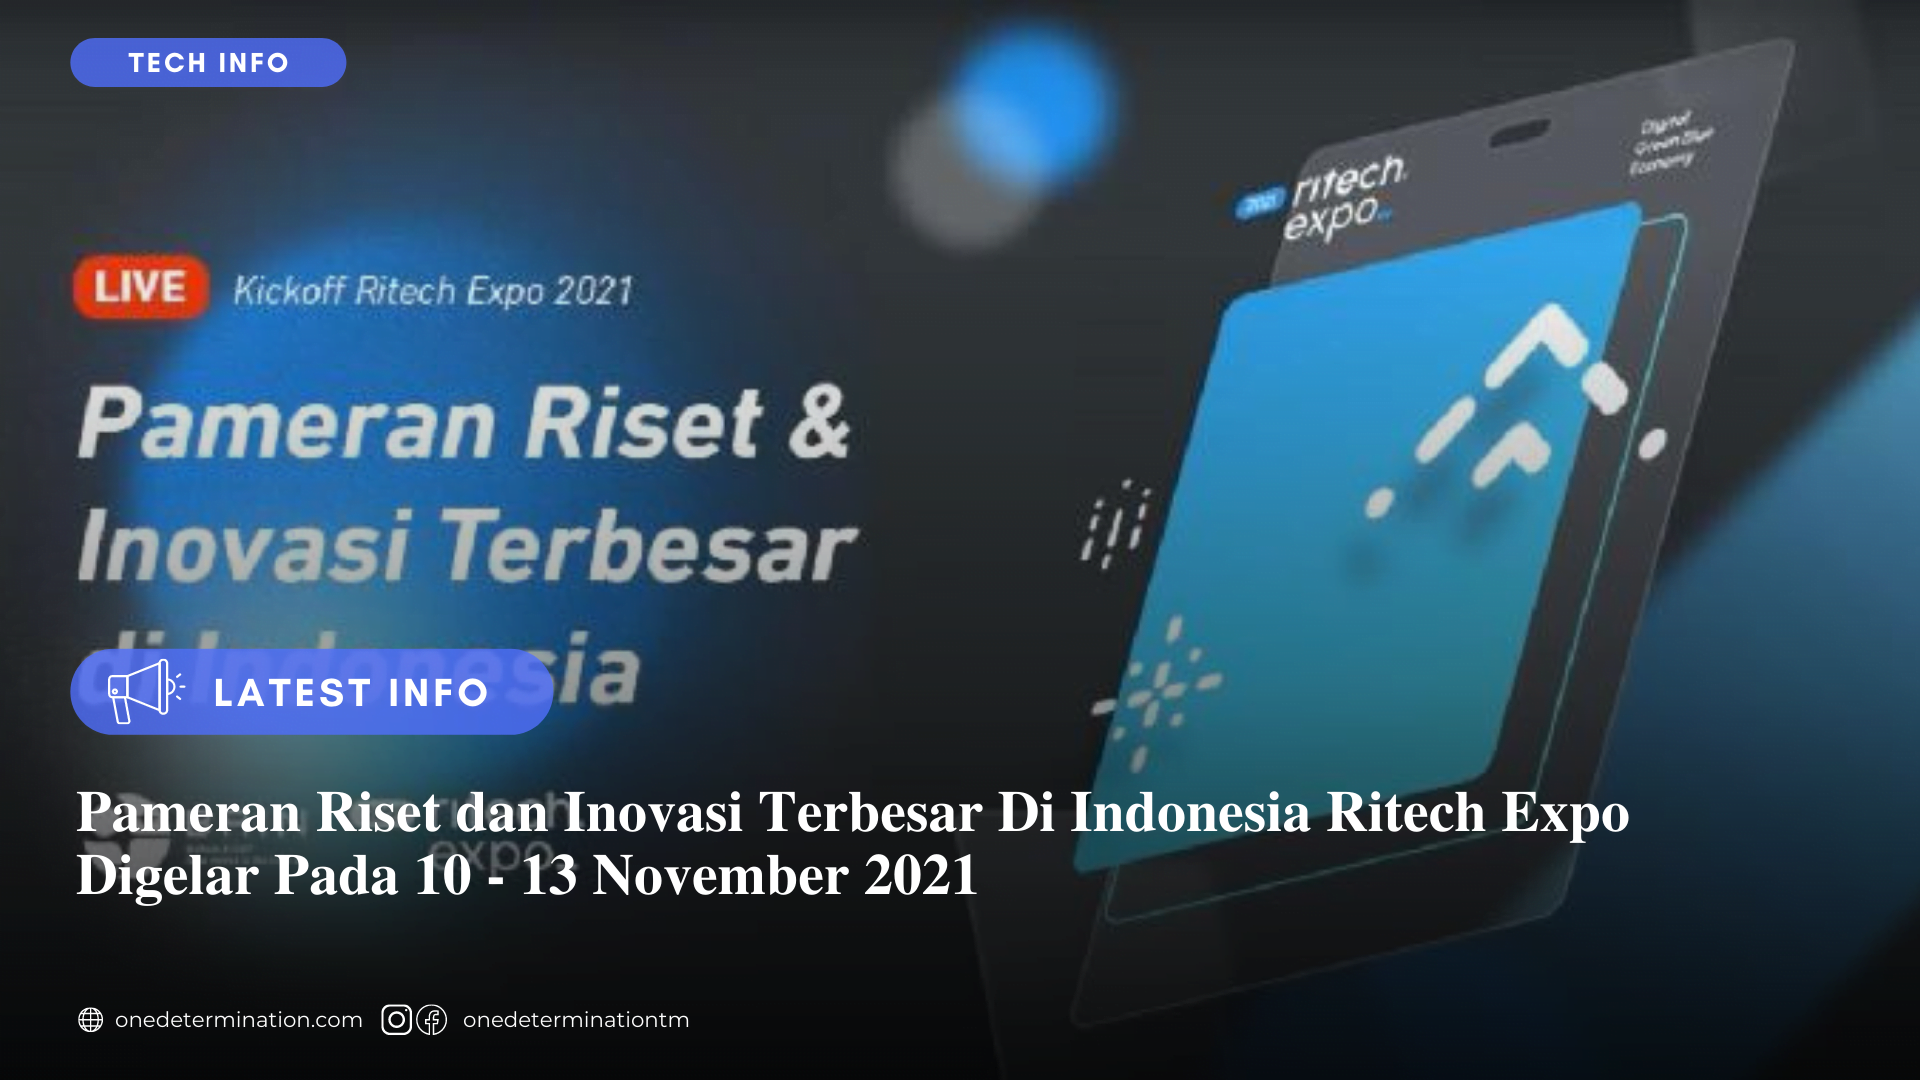 Pameran Riset dan Inovasi Terbesar Di Indonesia